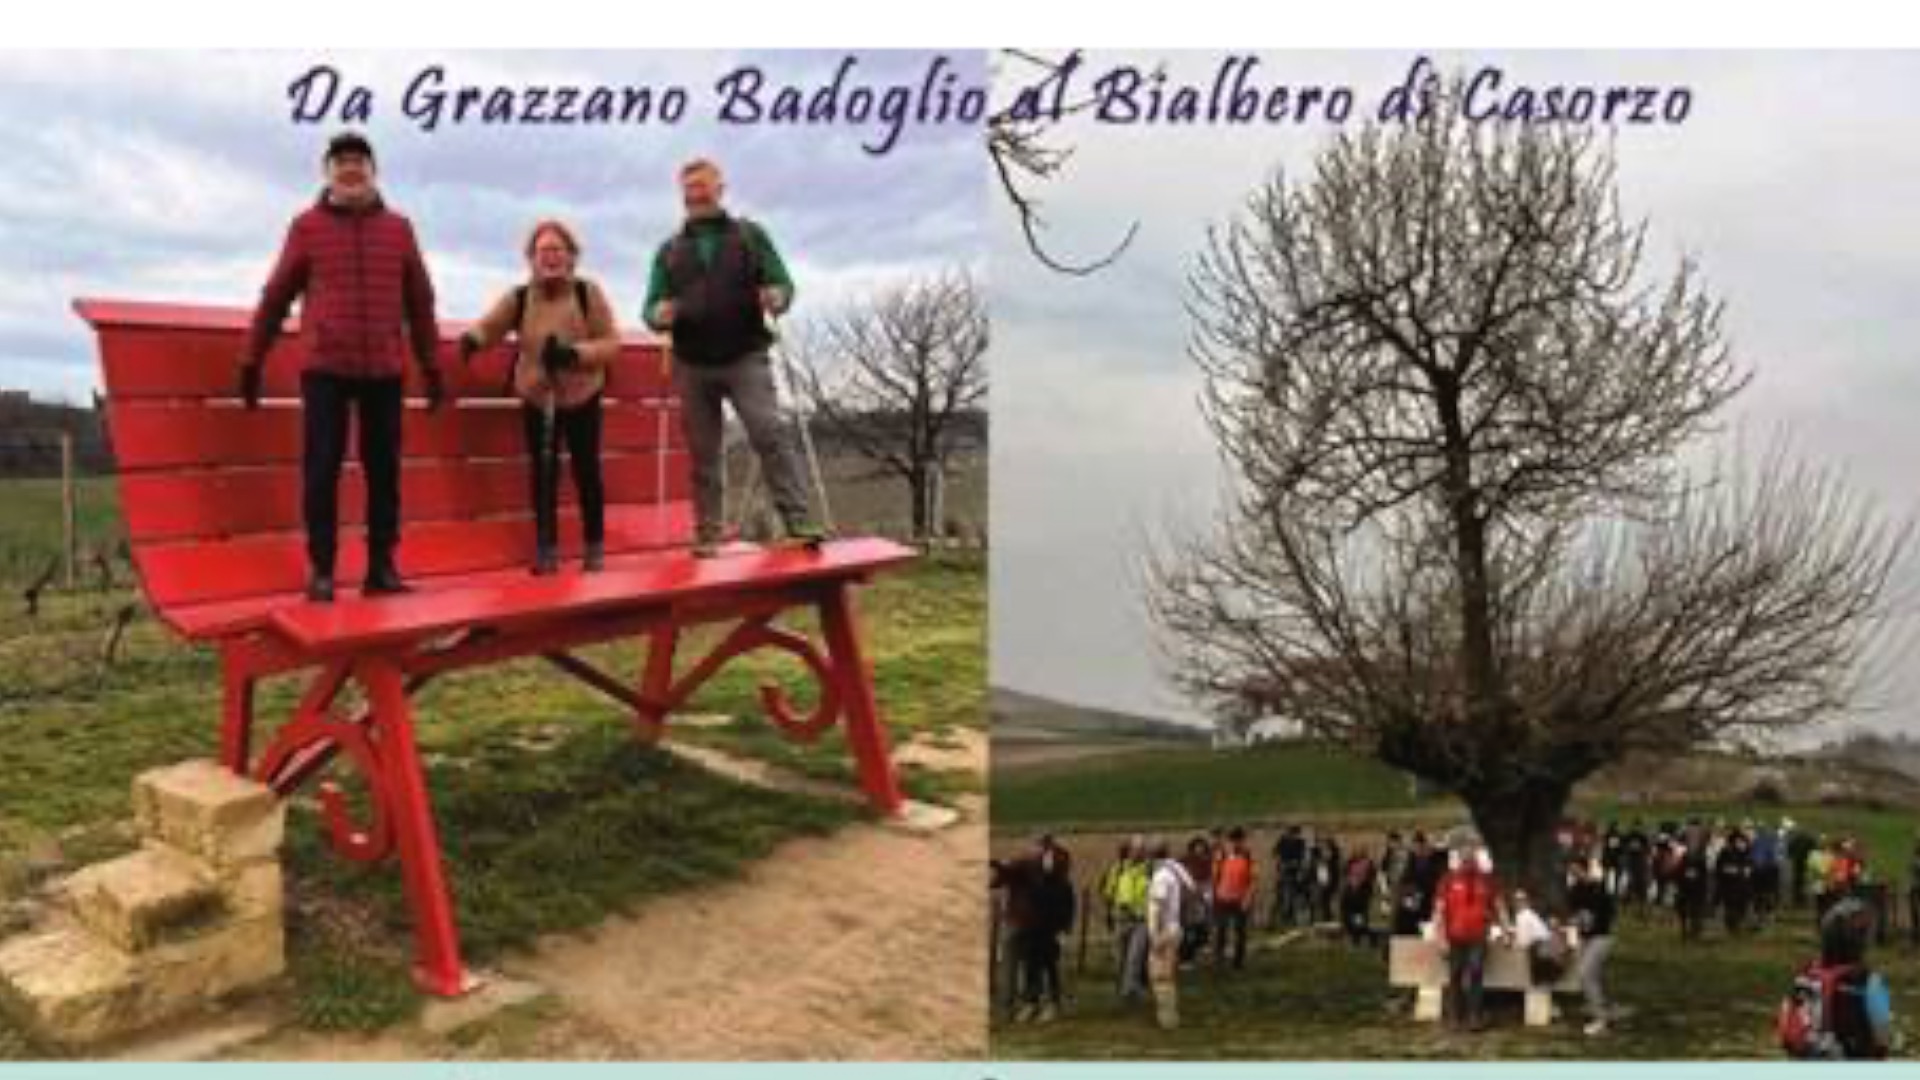 Pensieri colorati attimi dedicati... Trekking-Da-Grazzano-Badoglio-al-Bialbero-Casorzo-Post-2